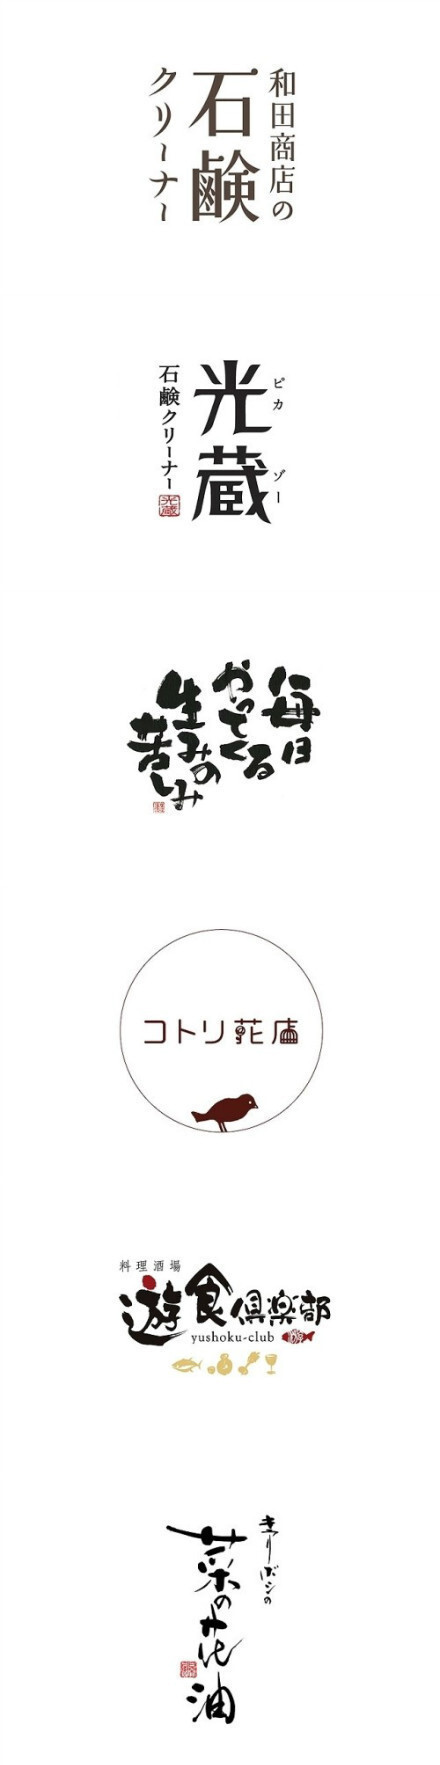 日本字体设计 BY HANY